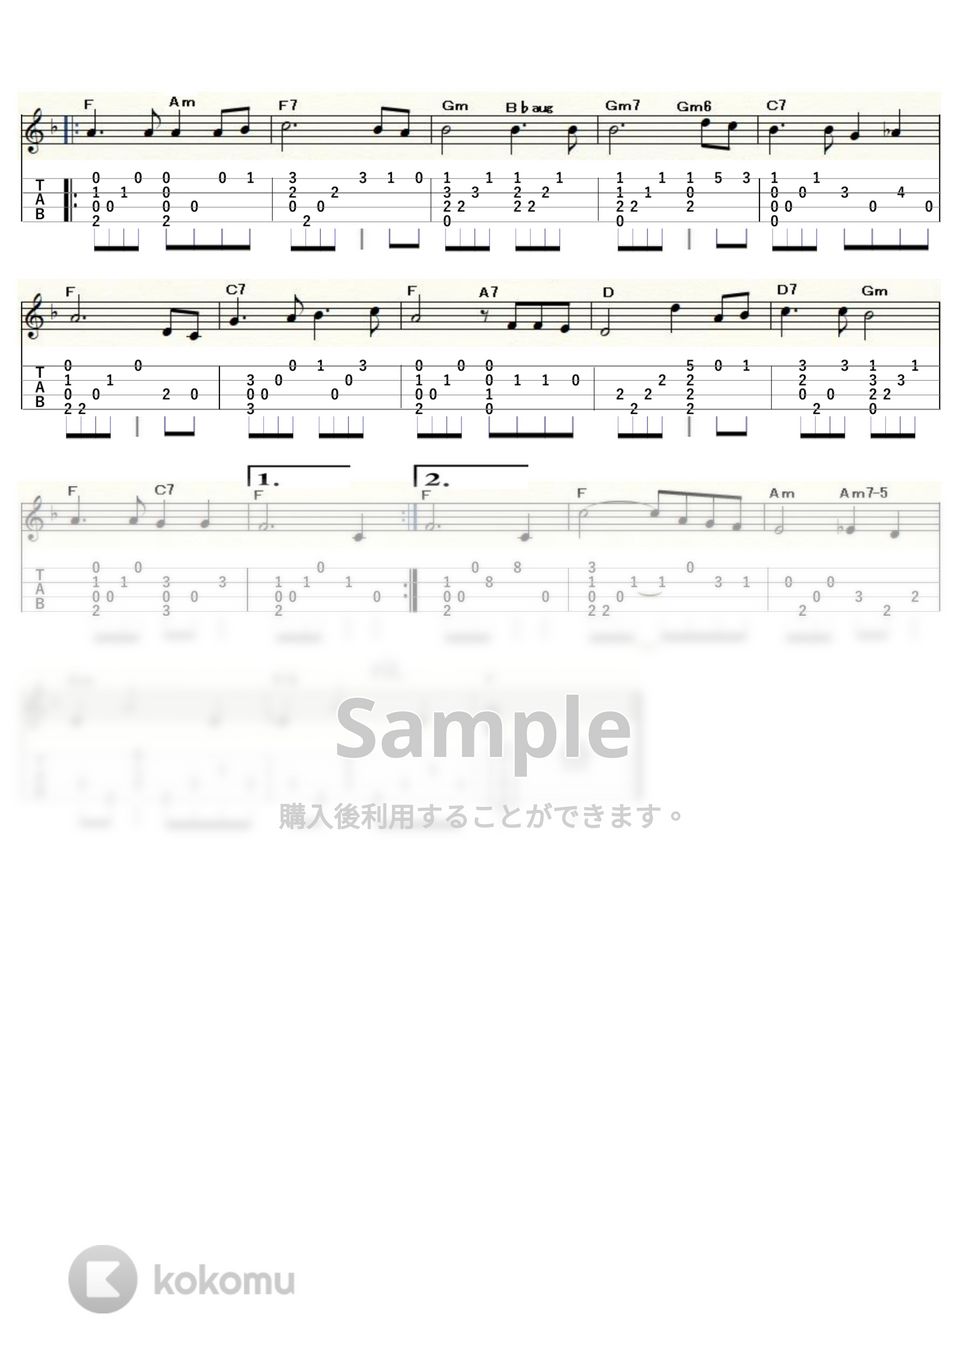 坂本九 - 見上げてごらん夜の星を (ｳｸﾚﾚｿﾛ / Low-G / 中級) by ukulelepapa